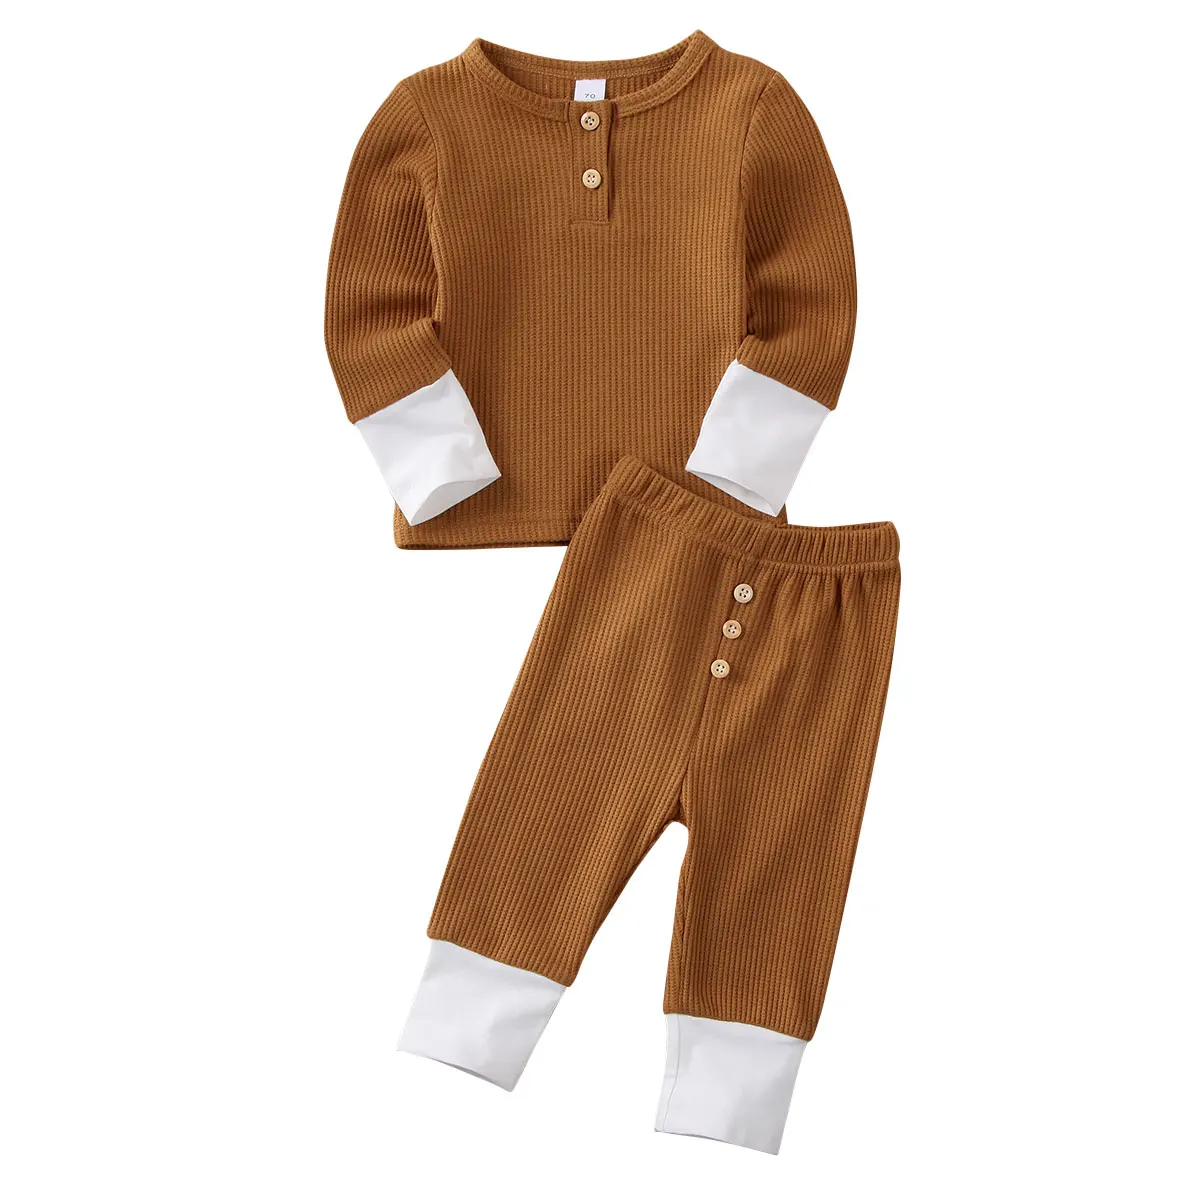 Pudcoco/комплект одежды для малышей, одежда для маленьких девочек и мальчиков, вязаные топы, футболка, леггинсы, штаны, комплект одежды - Цвет: Коричневый